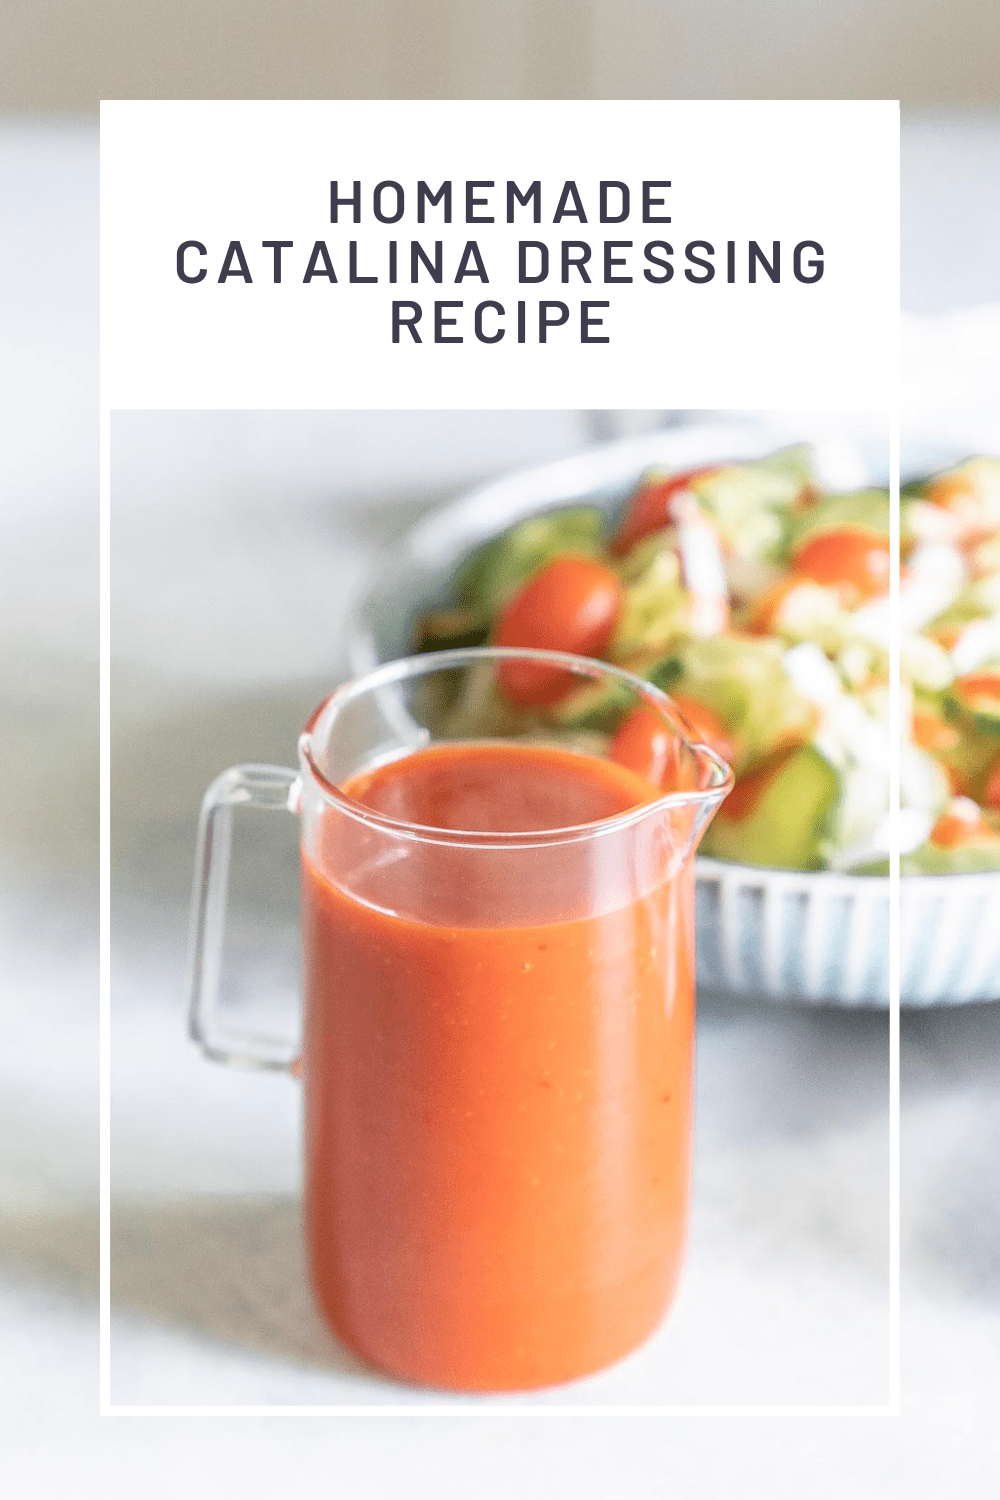 Homemade Catalina Dressing Recipe